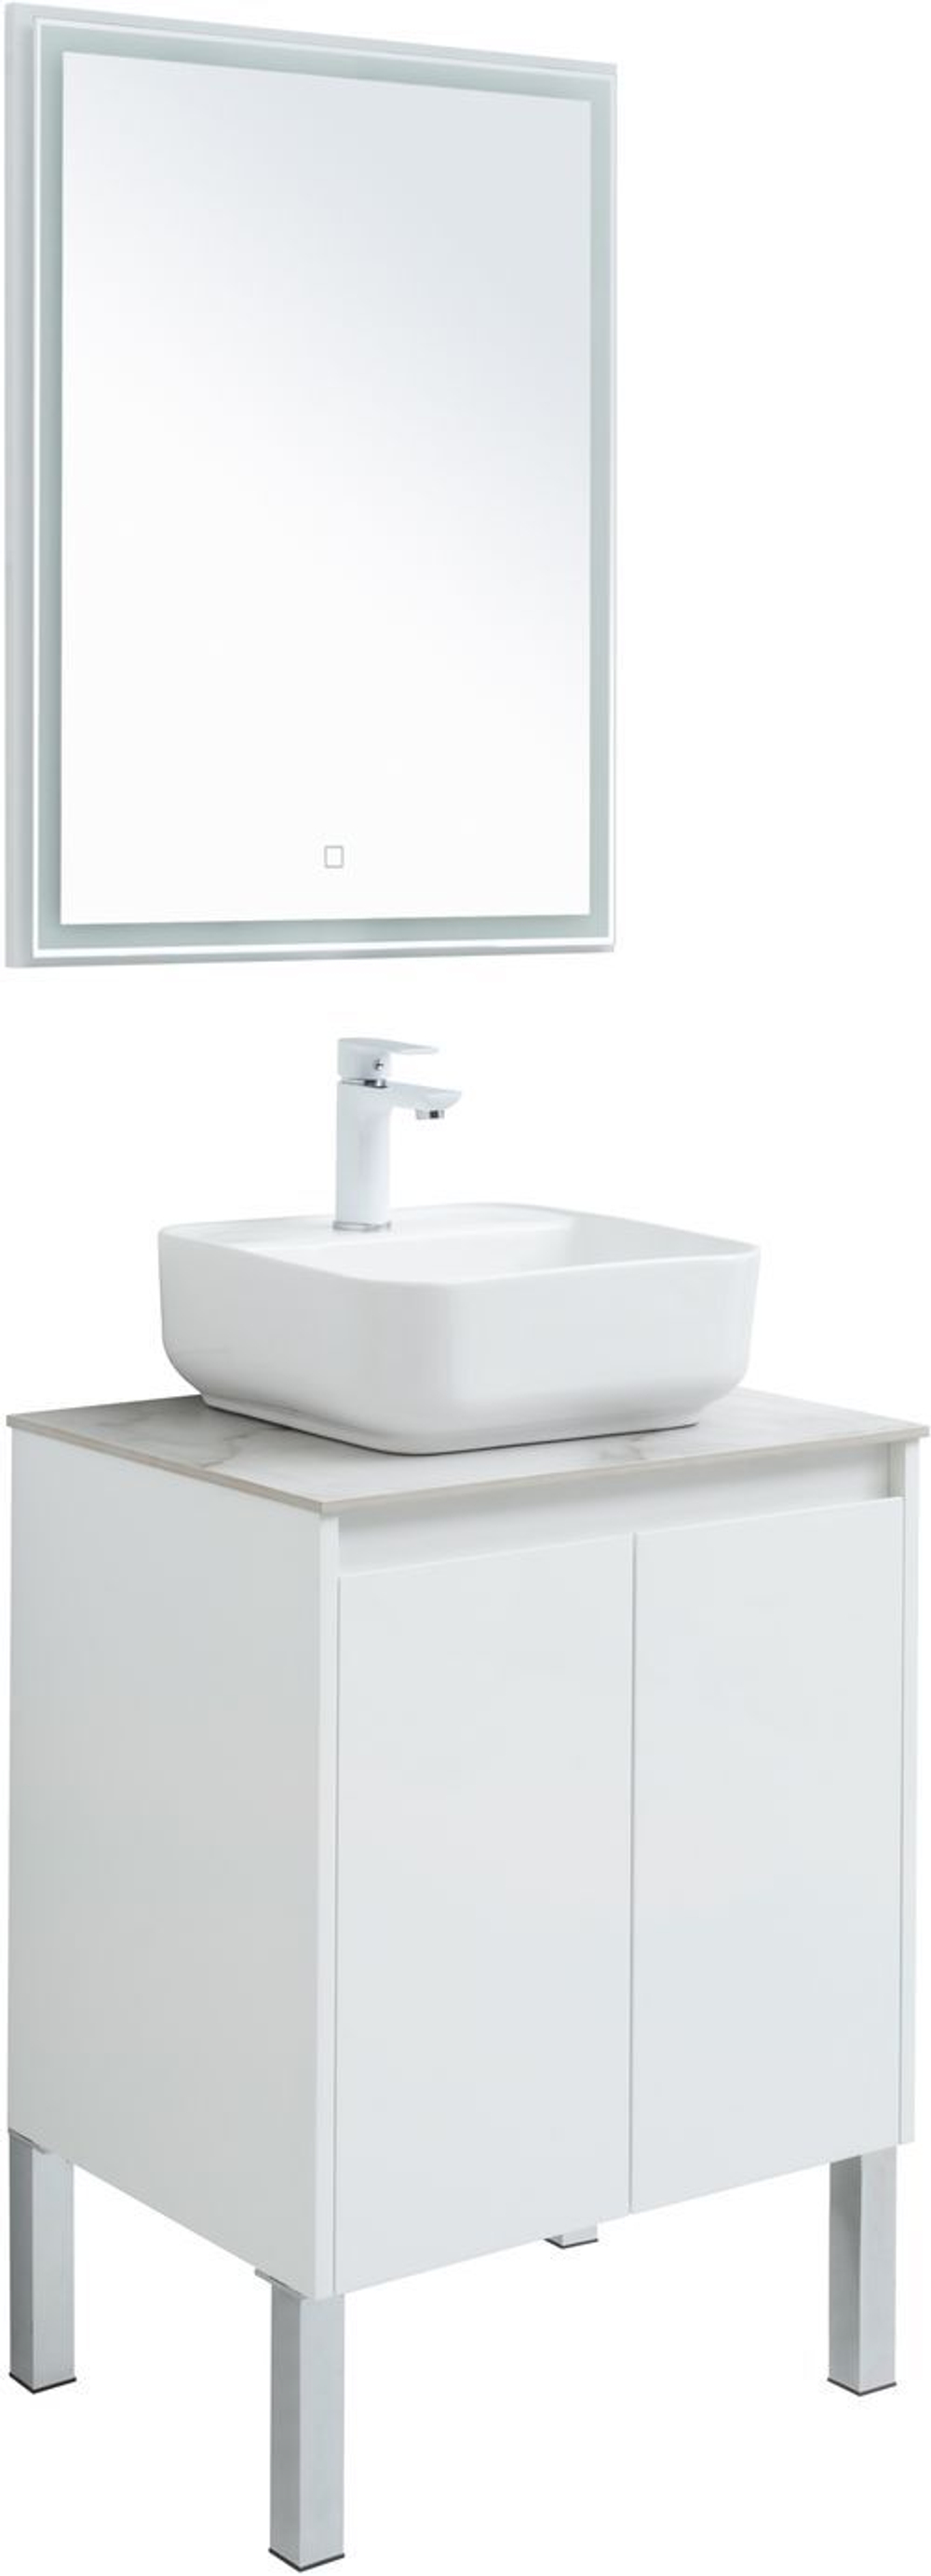 Мебель для ванной Aquanet Nova Lite 60 белый глянец (2 дверцы)